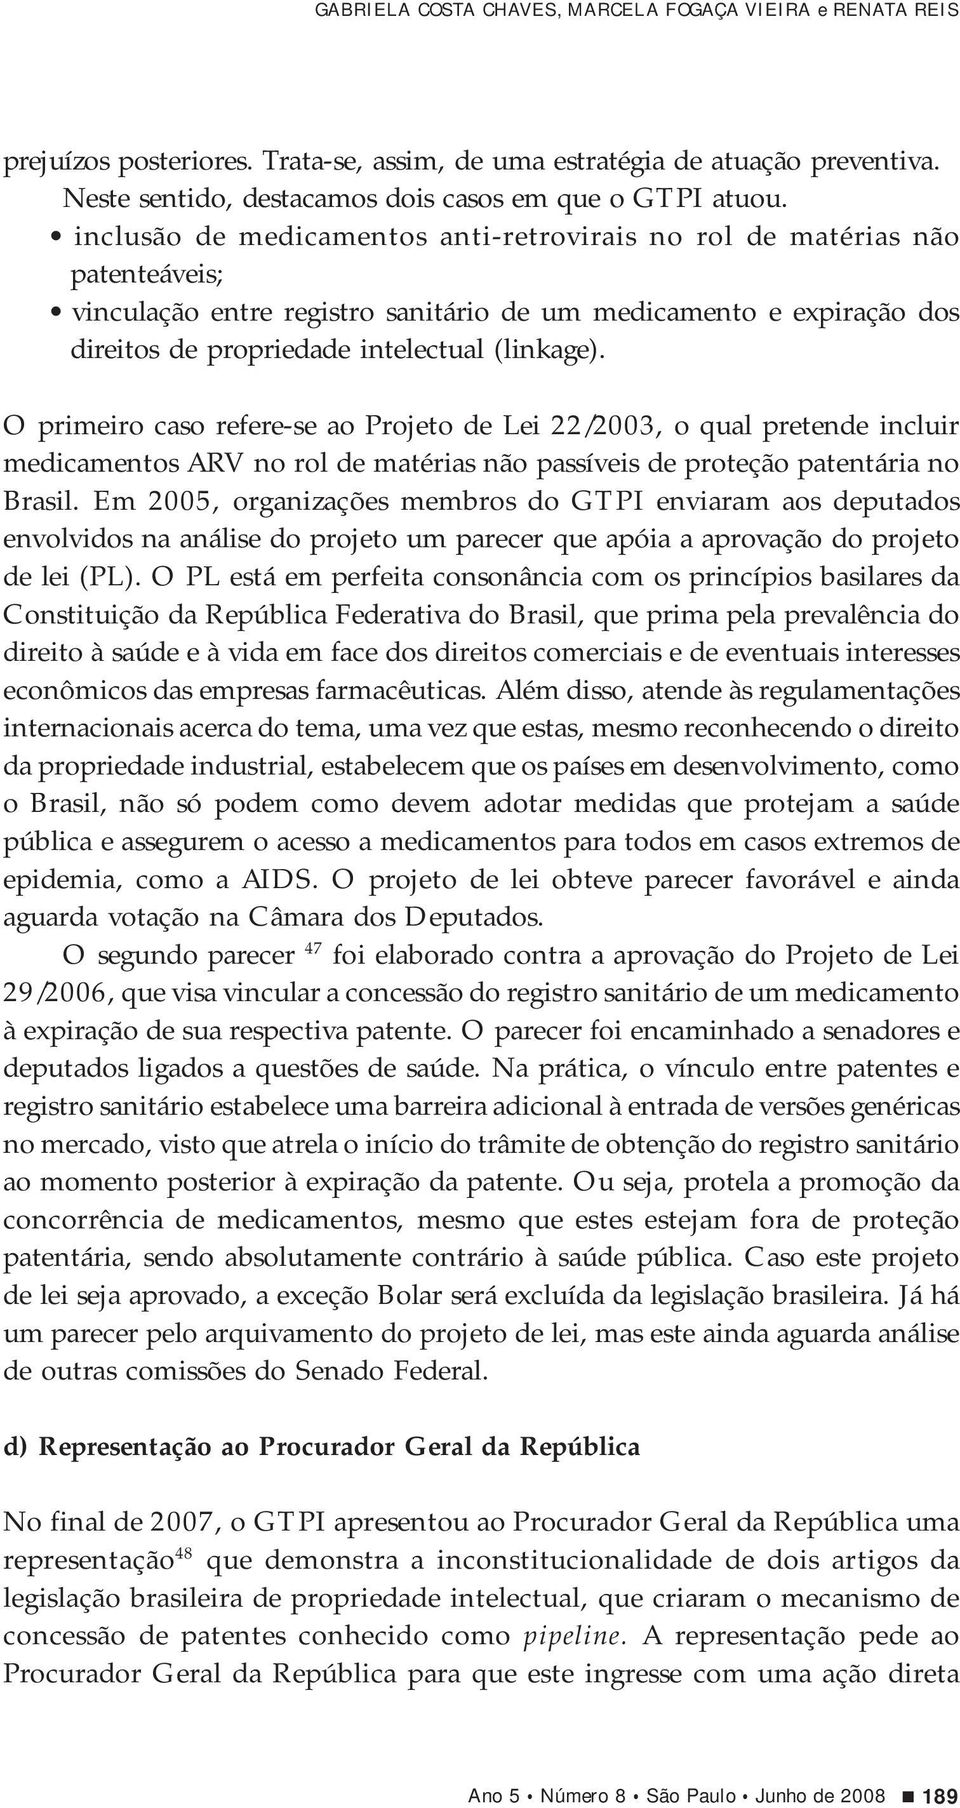 O primeiro caso refere-se ao Projeto de Lei 22/2003, o qual pretende incluir medicamentos ARV no rol de matérias não passíveis de proteção patentária no Brasil.